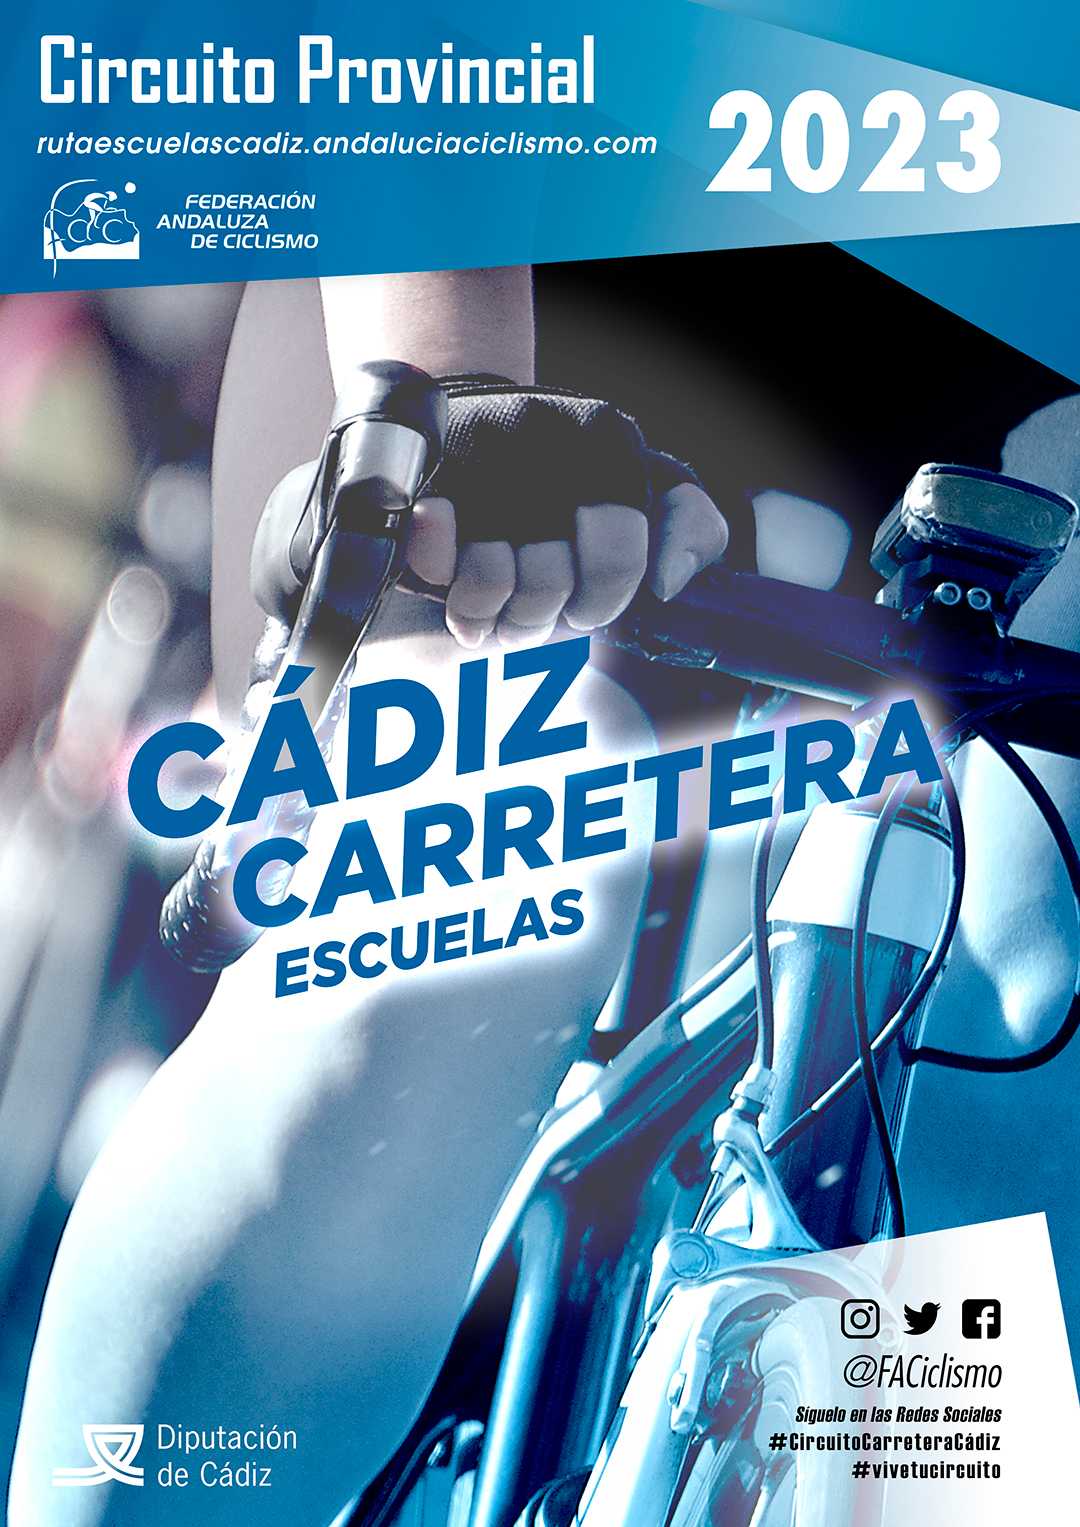 Fechas del Circuito Provincial de Cádiz Carretera Escuelas 2023